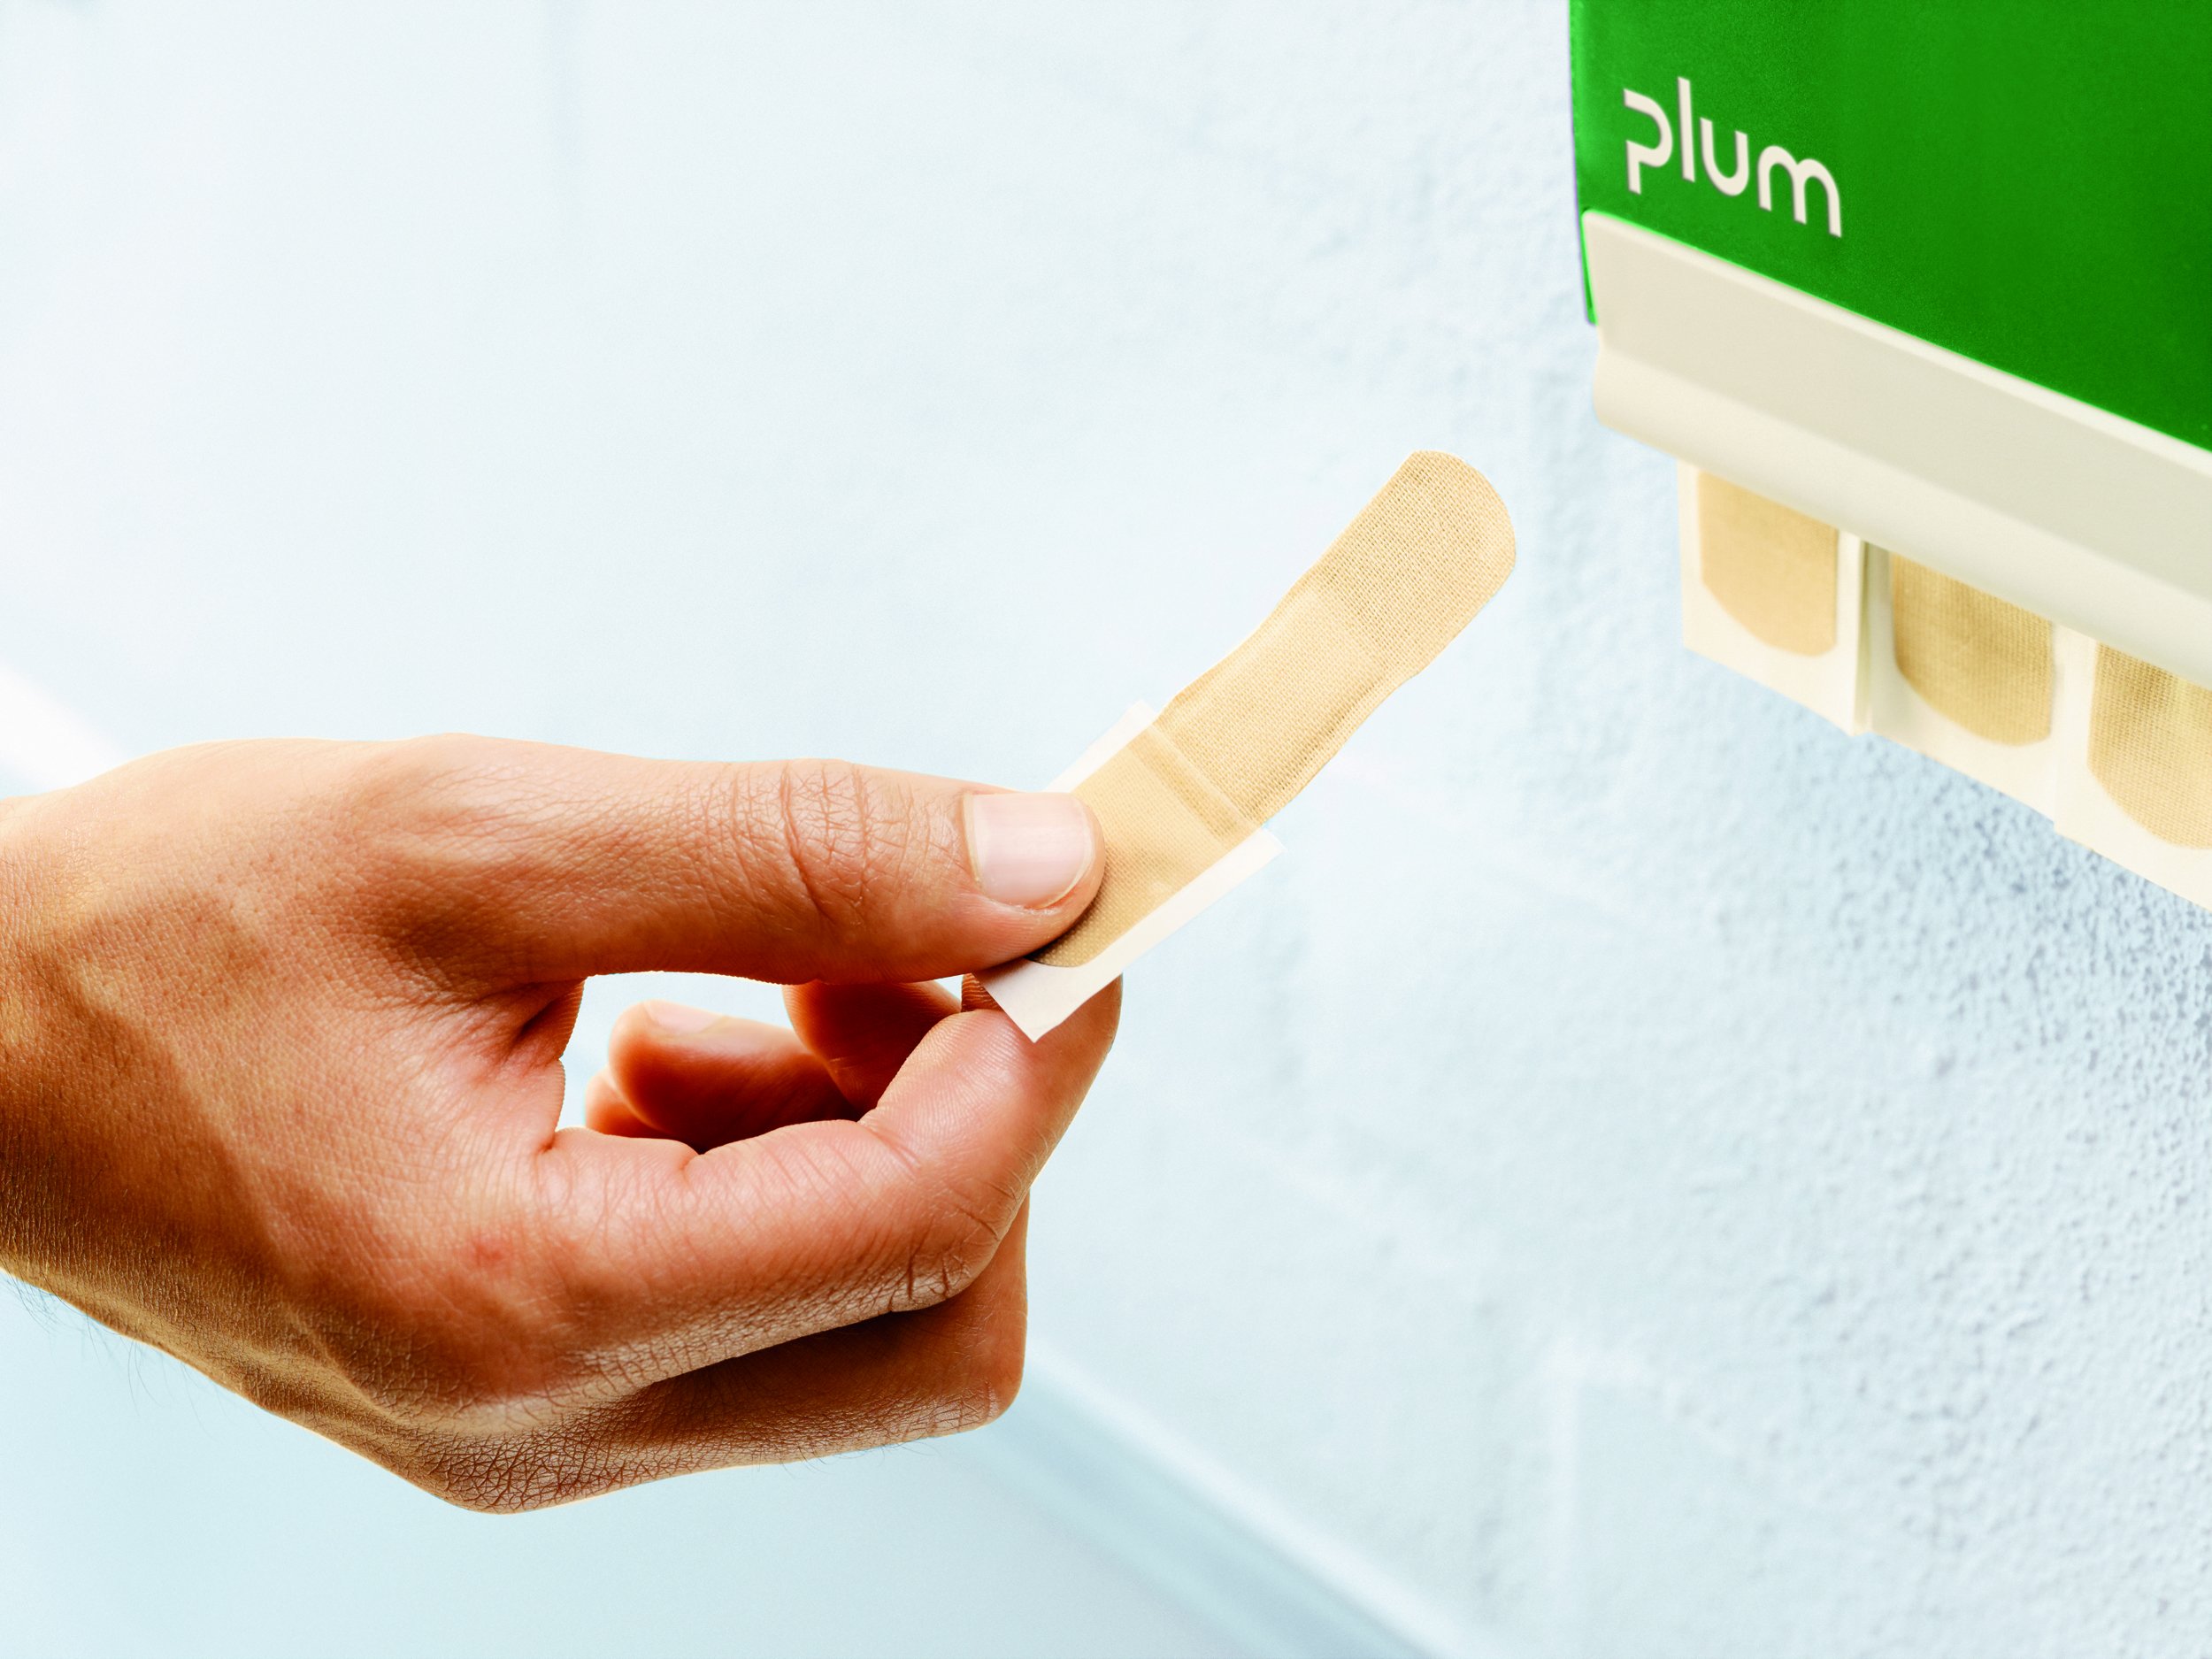 Plum Quickfix Bandage Dispenser (5507)